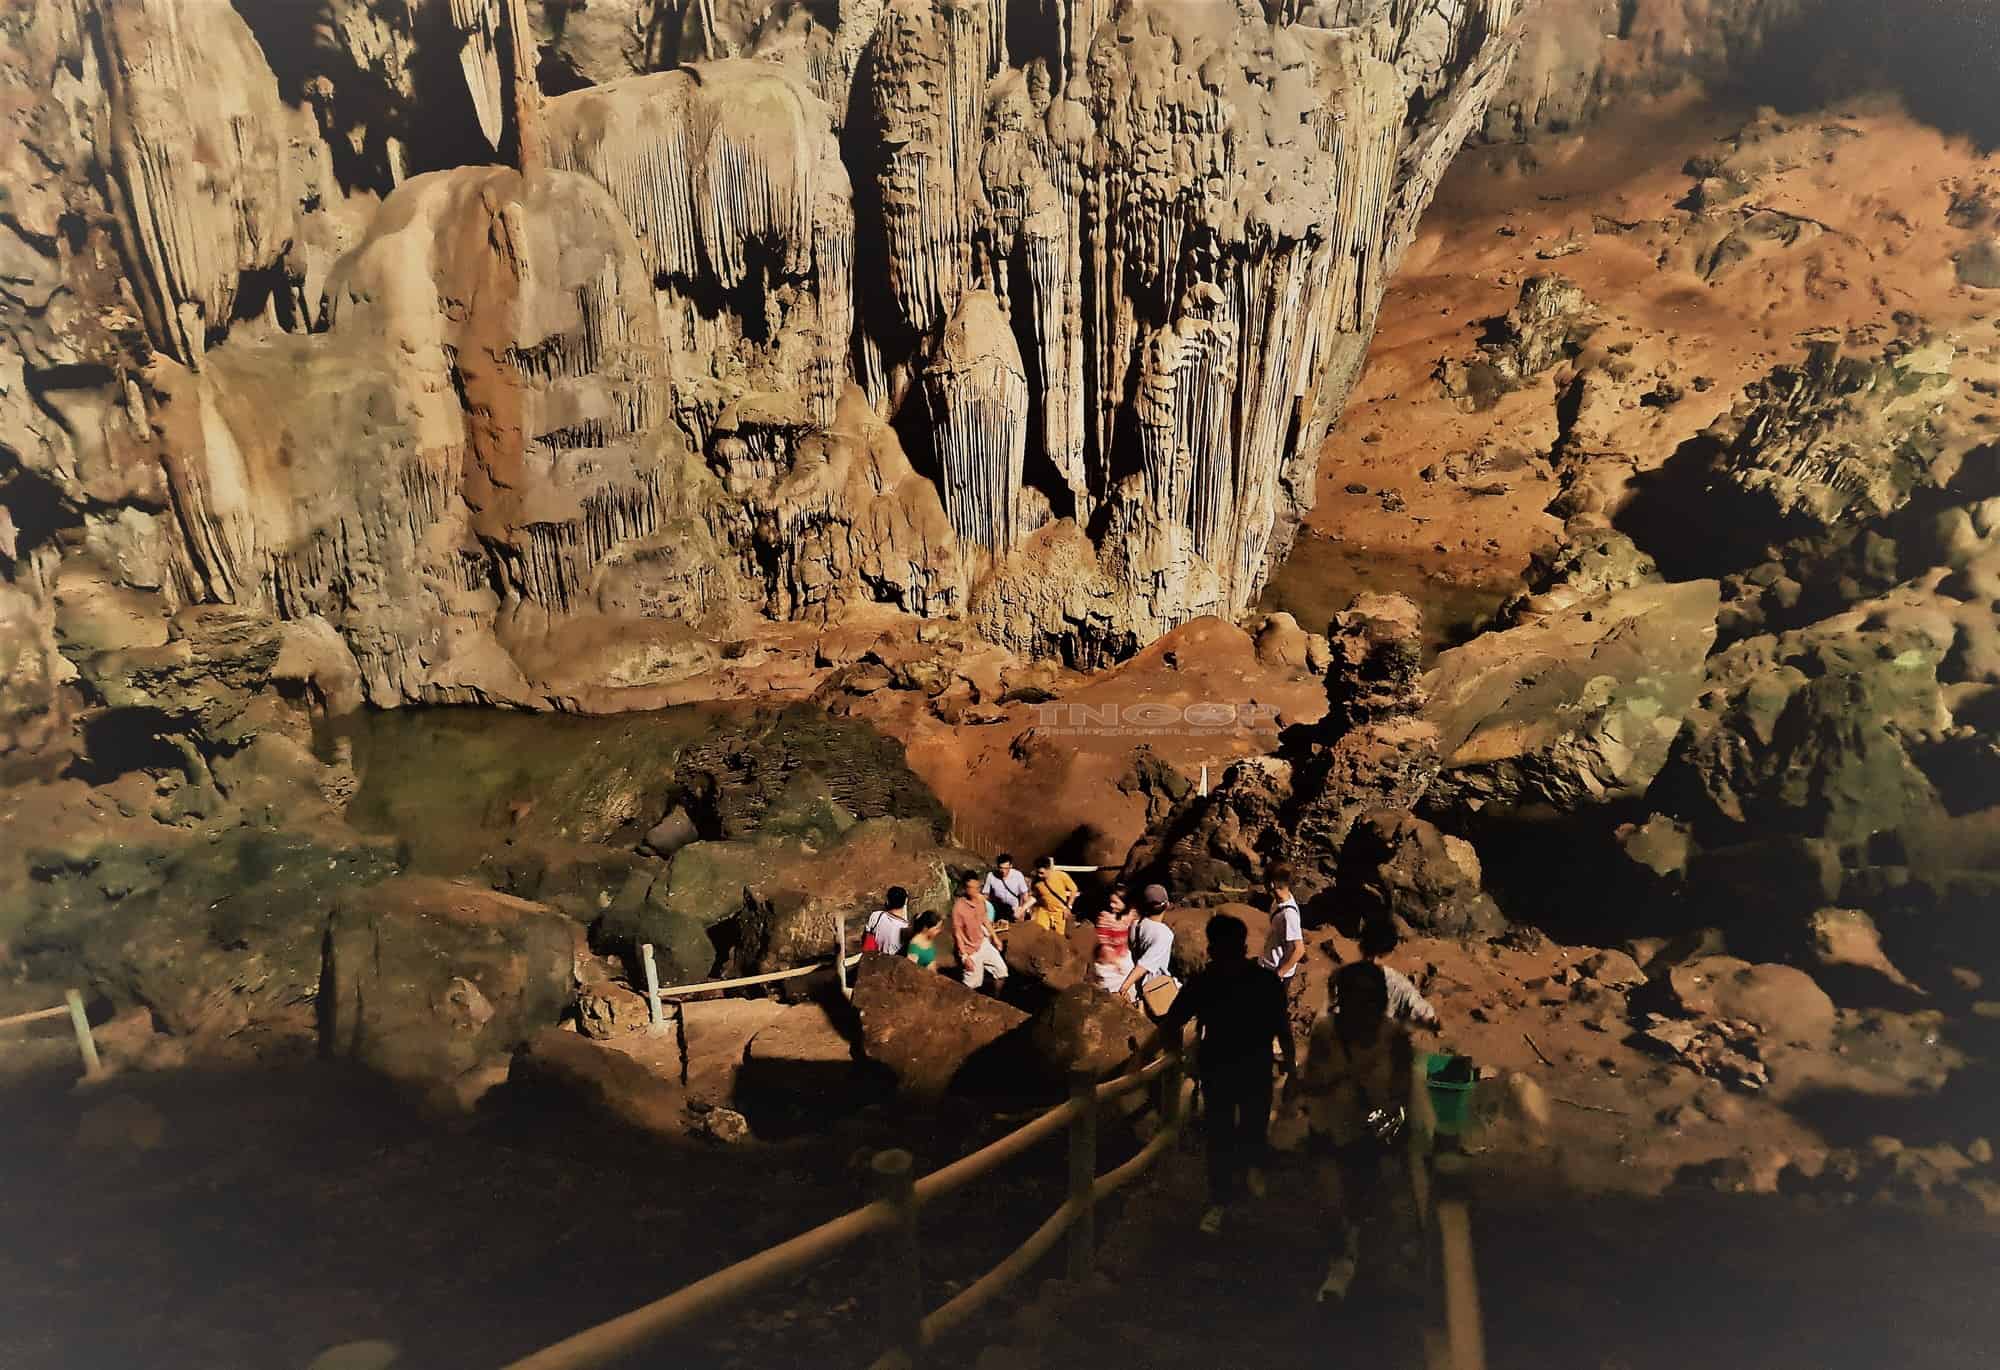 Hang Dơi ở phía trong hang Sáng, với nhiều khối thạch nhũ đá vôi có hình thu như tượng Phật Bà Quan âm, đây cũng là nơi loài dơi thường đến cư ngụ